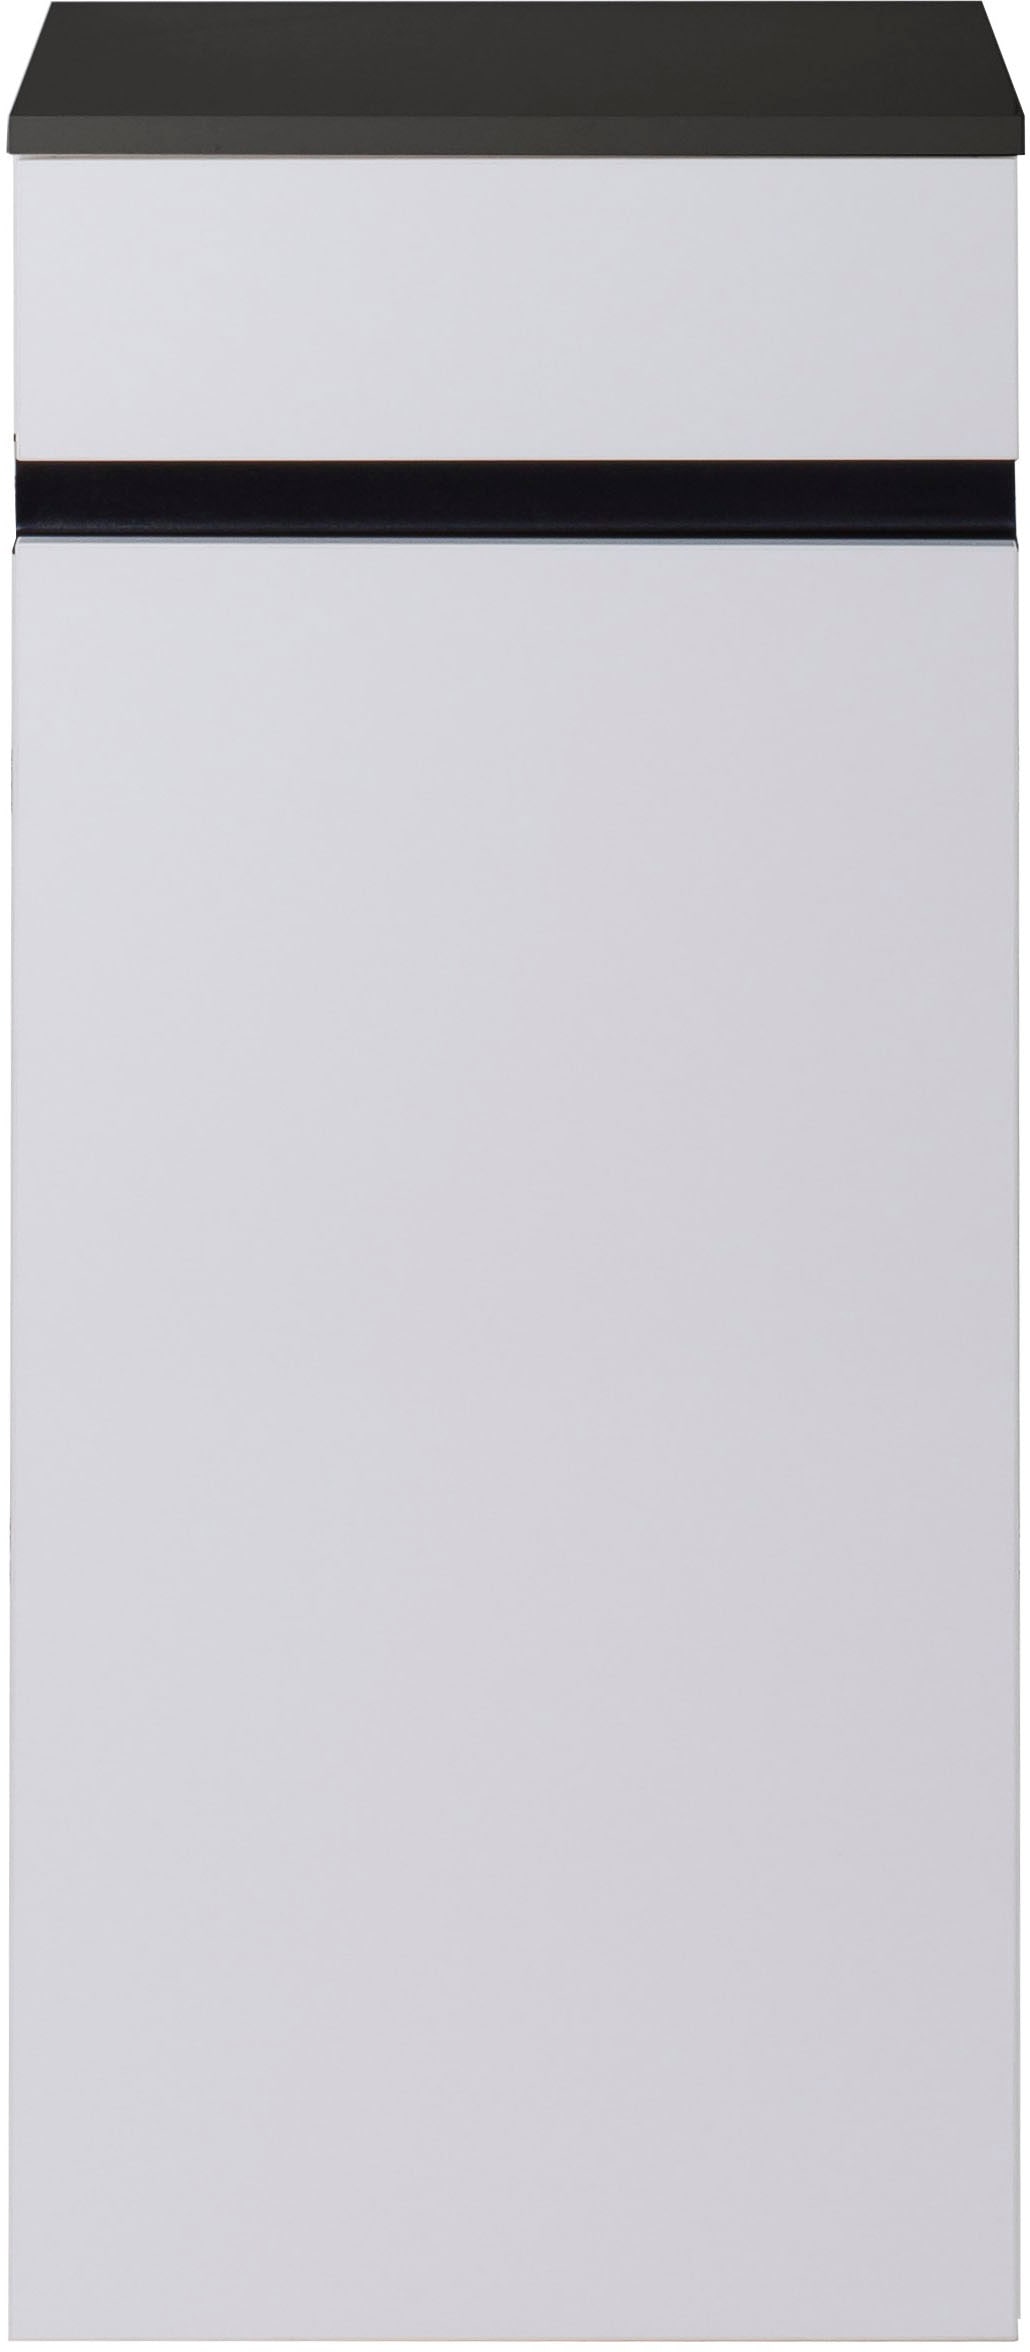 MARLIN Midischrank »3510clarus«, 40 cm breit, Soft-Close-Funktion, vormontierter Badschrank, Badmöbel von Marlin